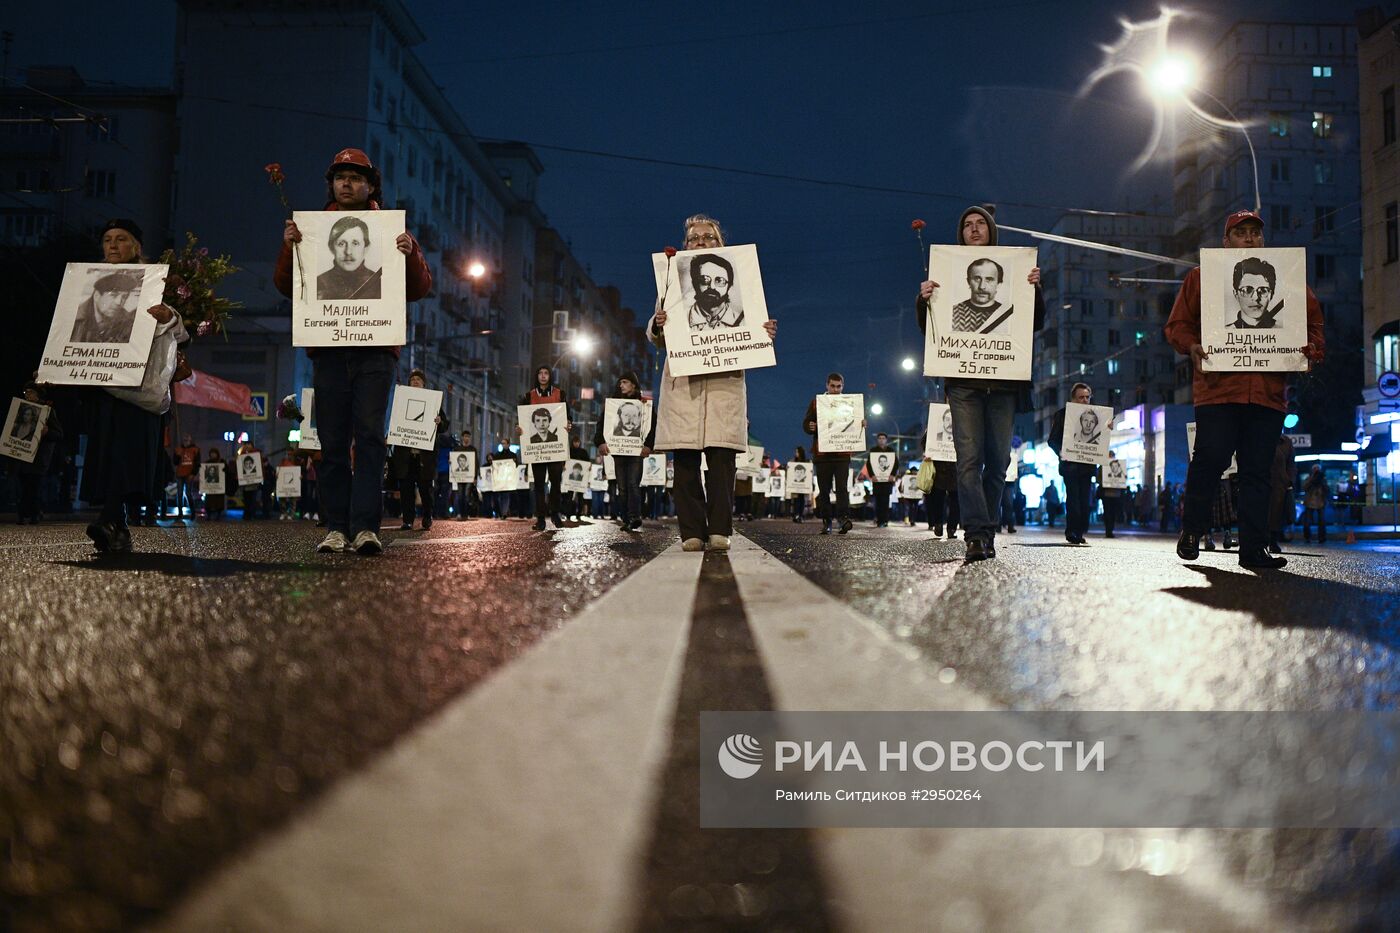 Митинг, посвященный 23-й годовщине событий 3-4 октября 1993 года в Москве